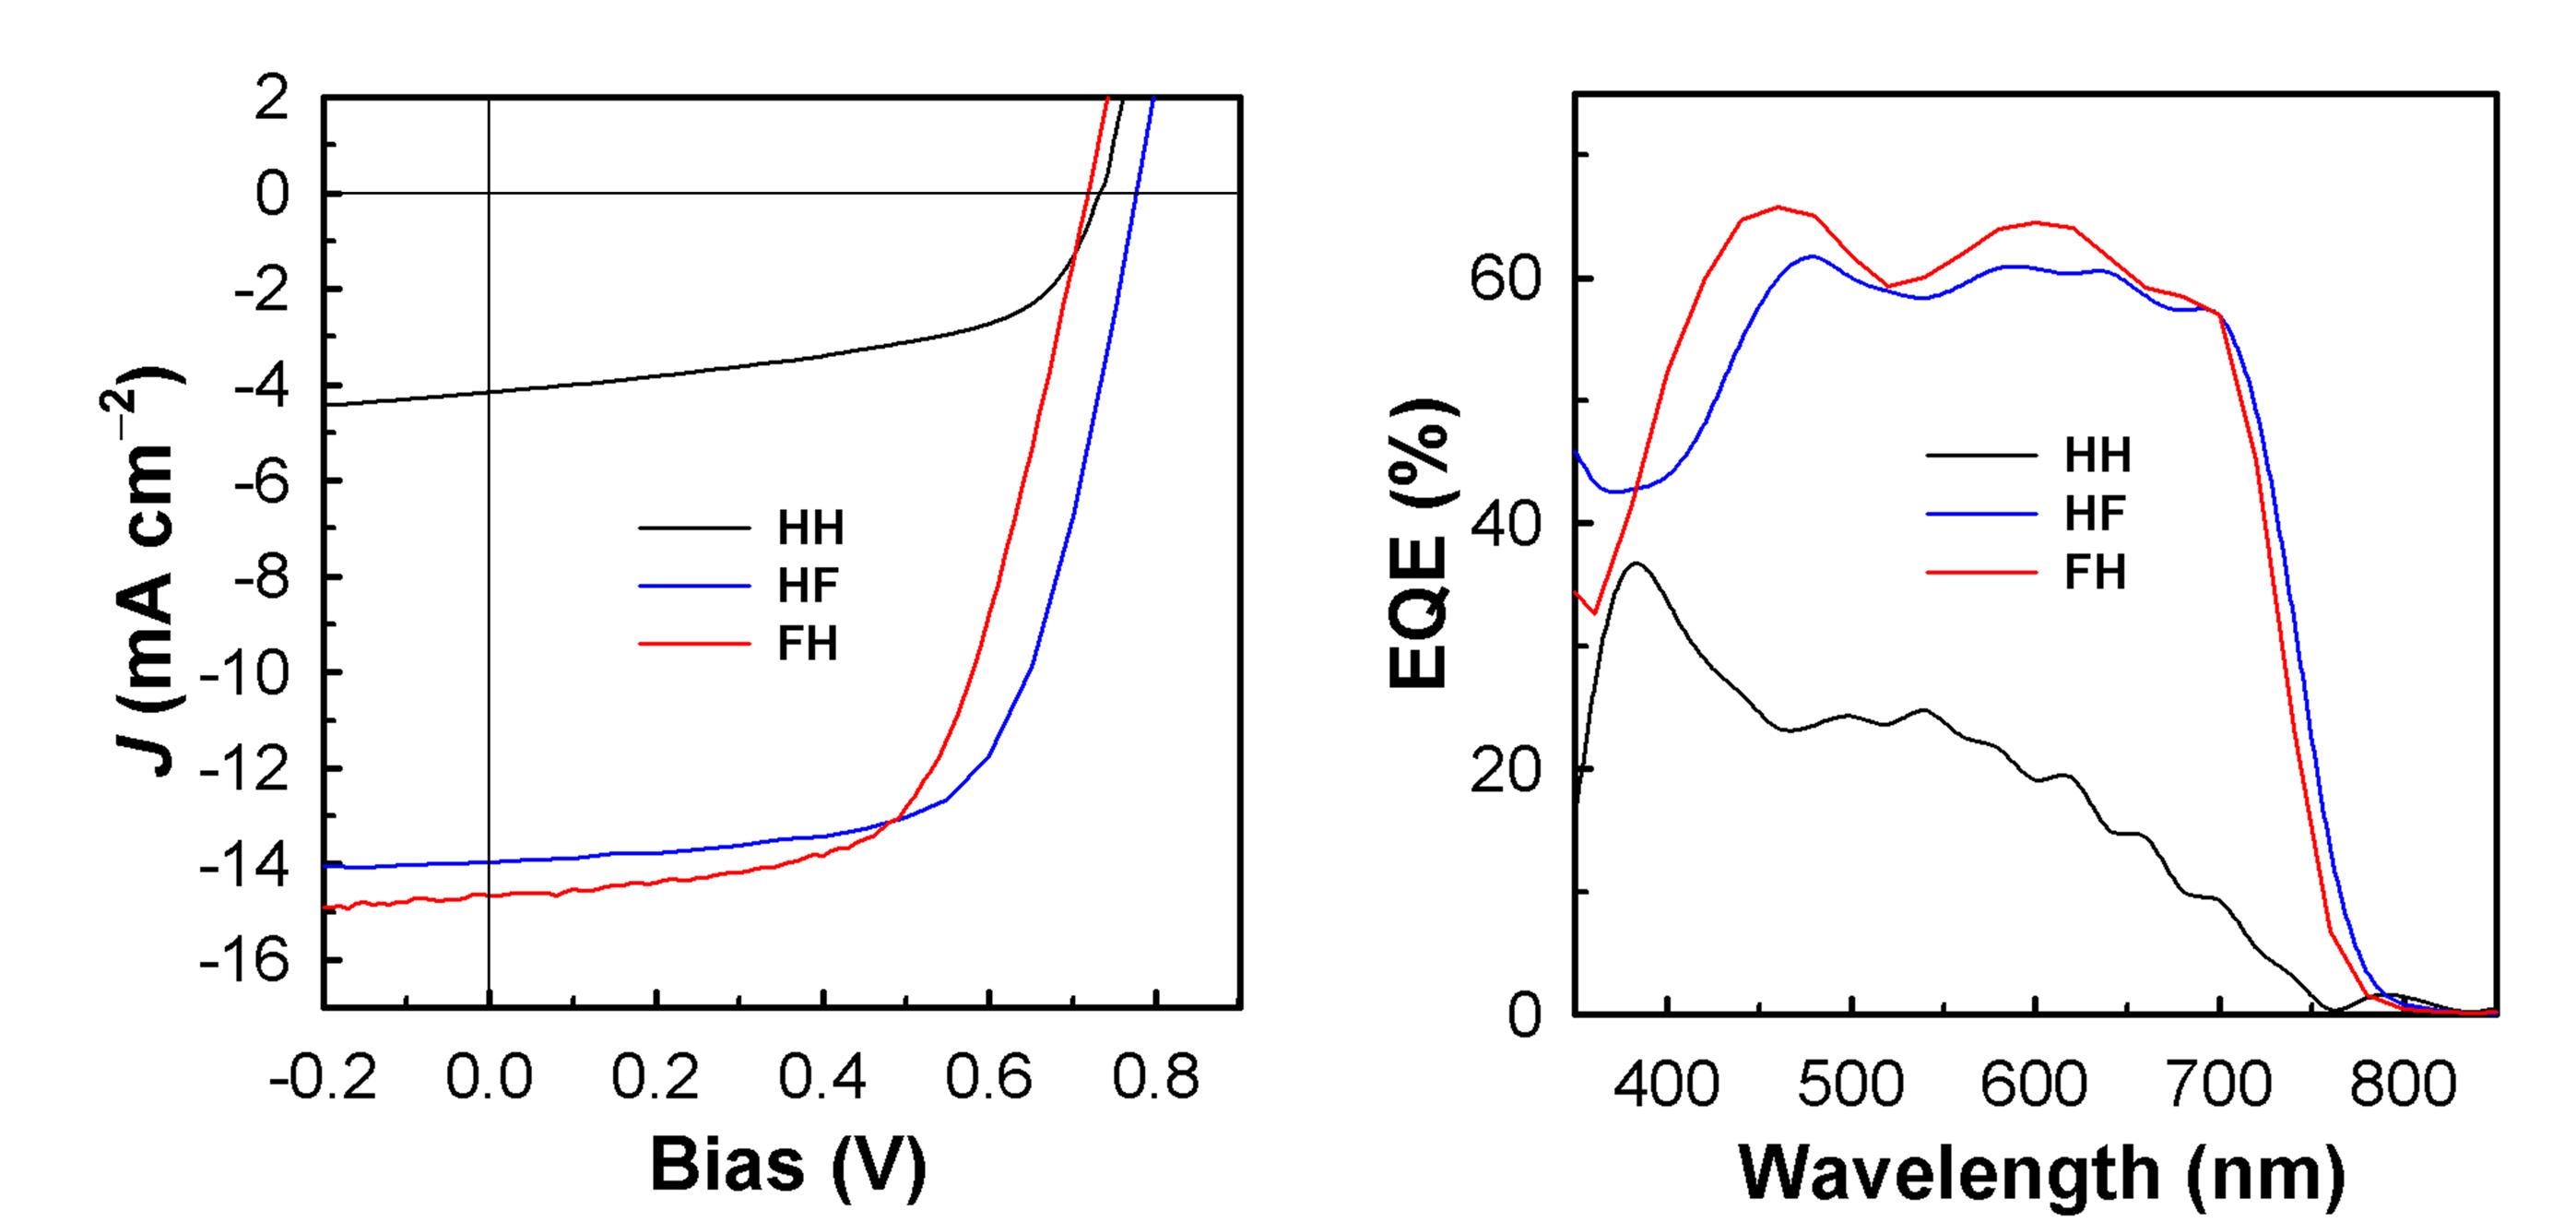 고분자/PC71BM BHJ 태양전지의 J-V 곡선와 EQE 스펙트럼.